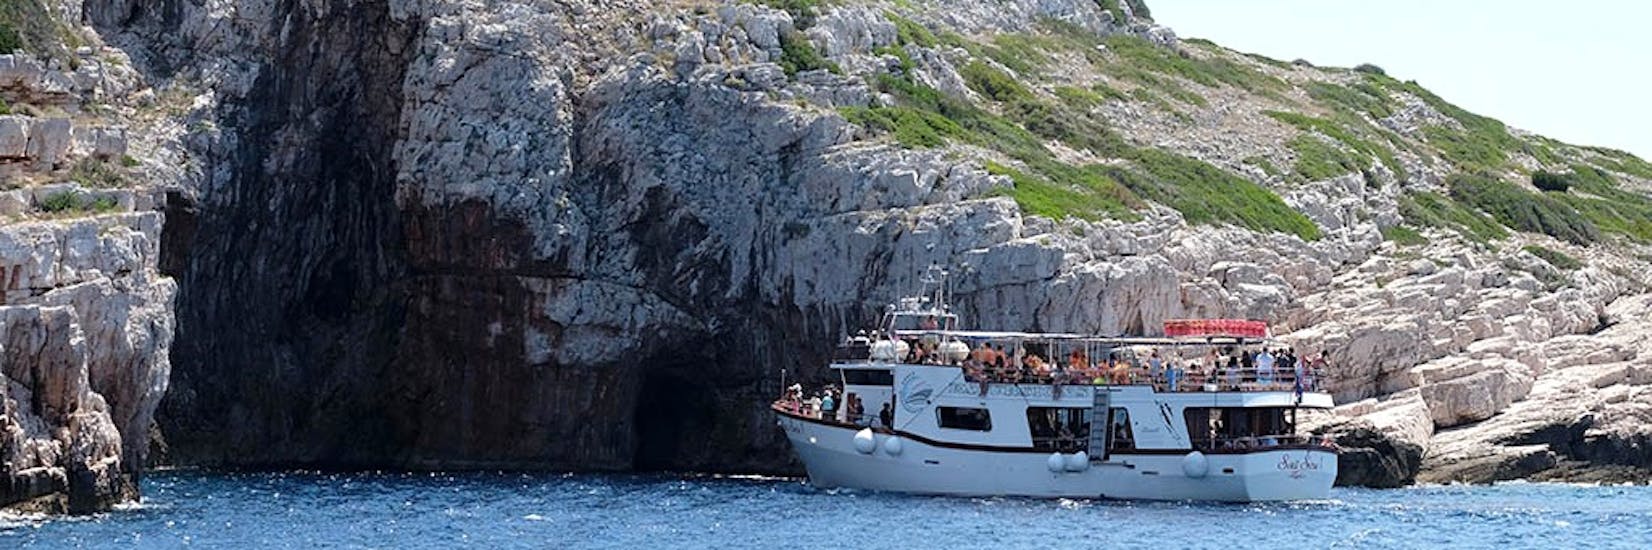 Navigeren naast de kliffen tijdens de boottocht naar de Kornati eilanden Dugi Otok & Katina met Maslina Excursies Biograd.